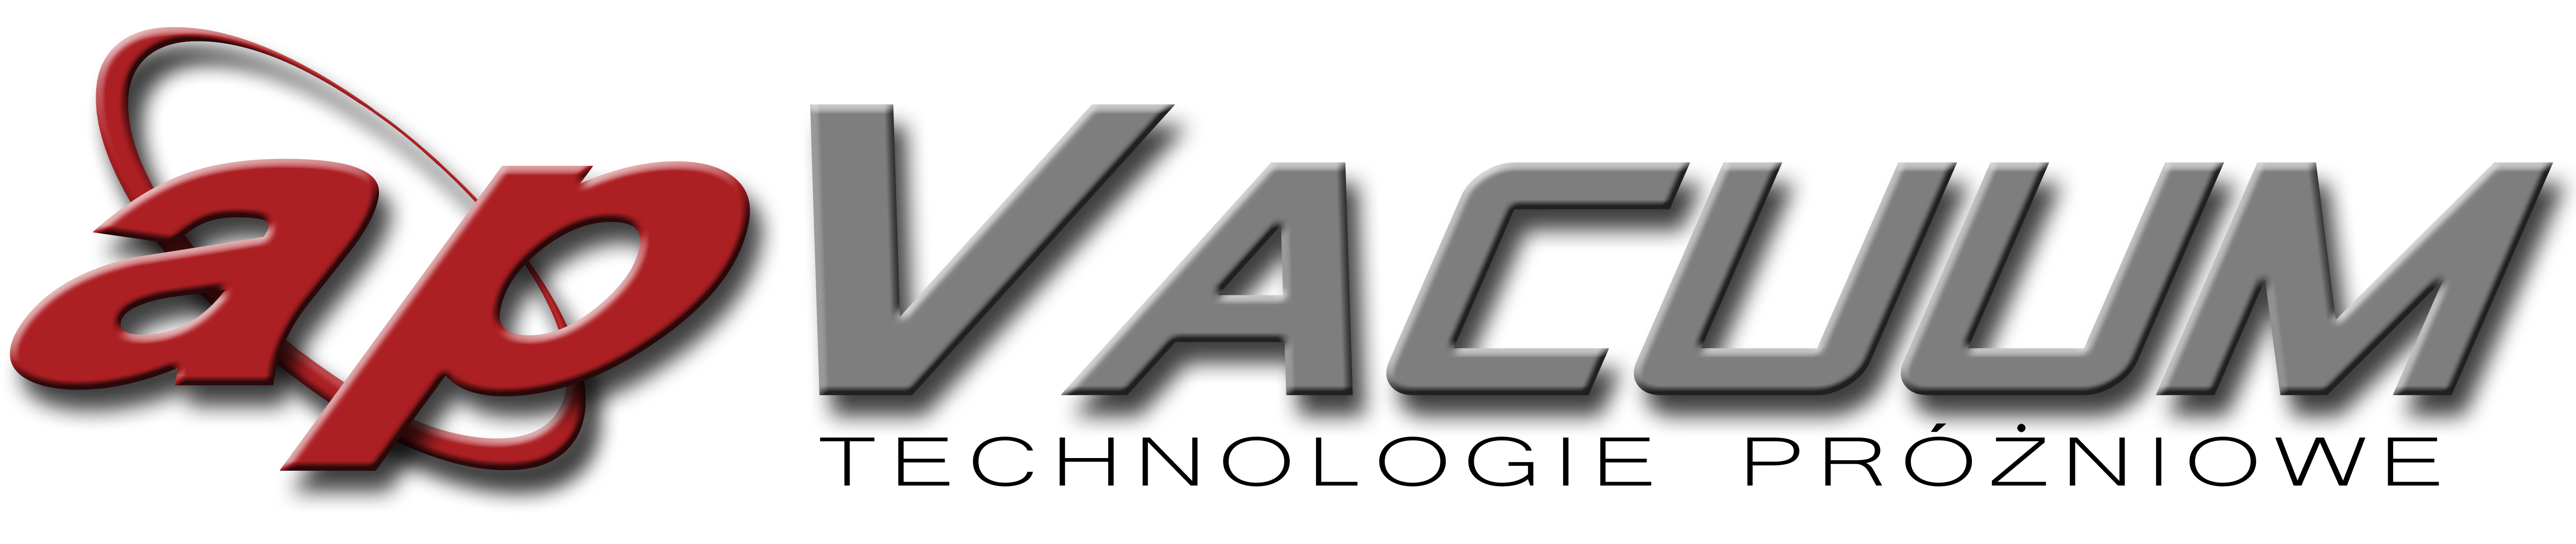 APVACUUM - logo